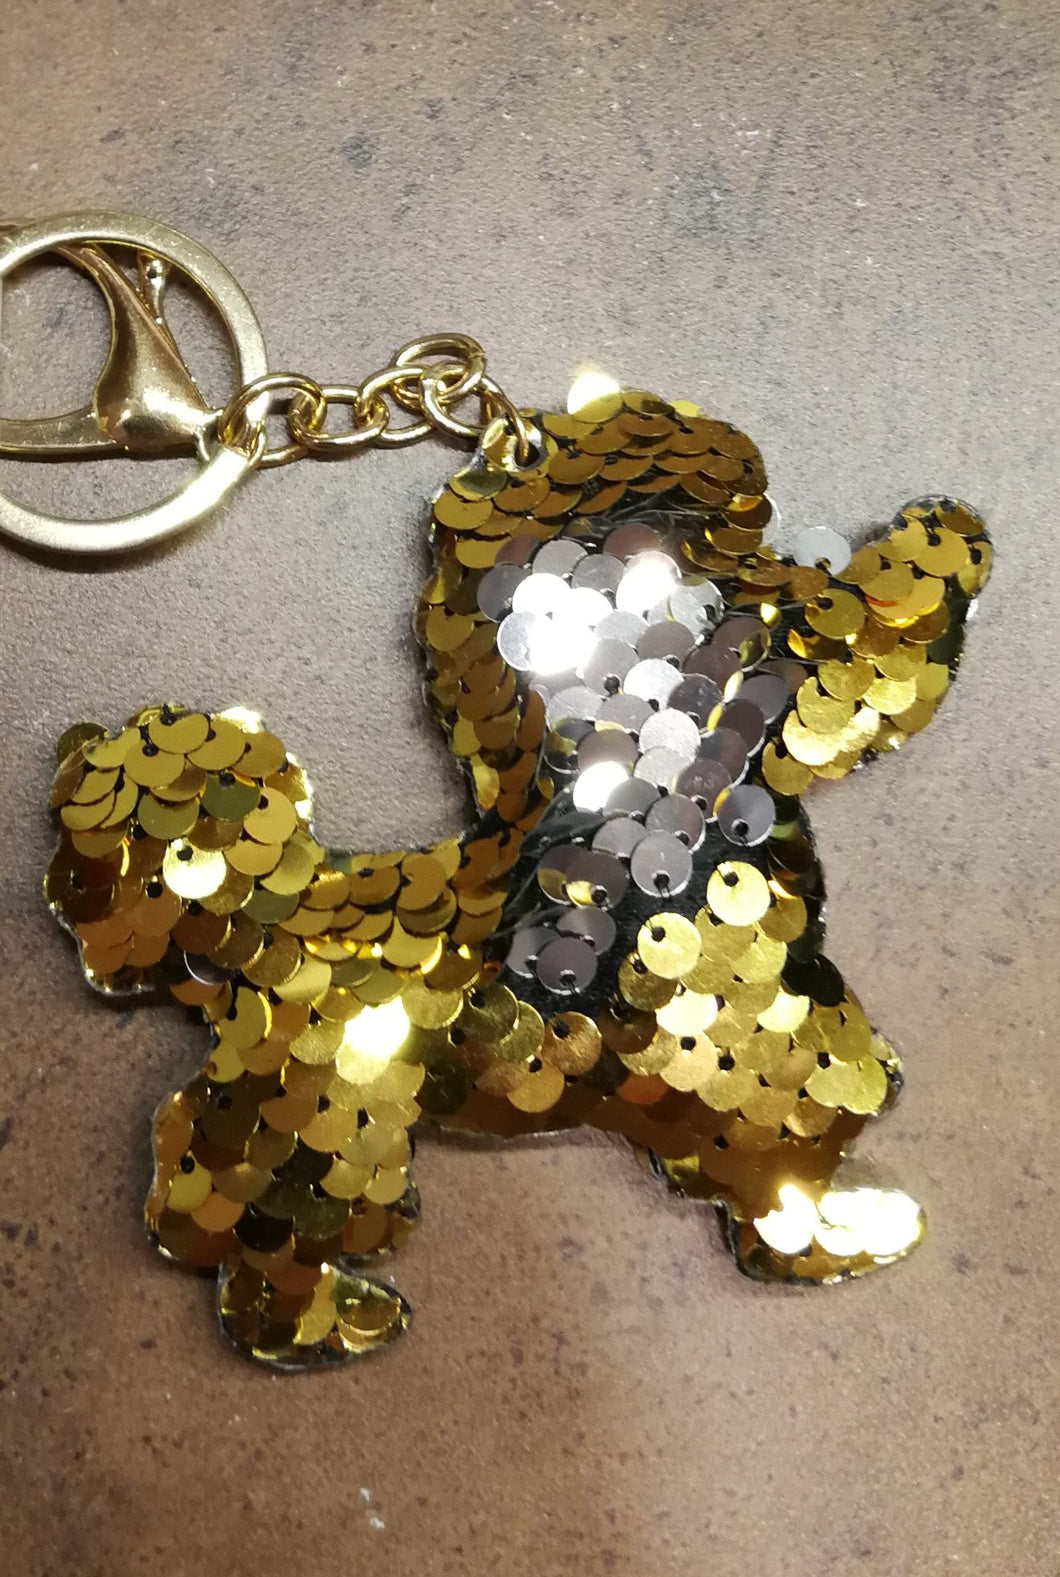 Sequin Poodle key chain